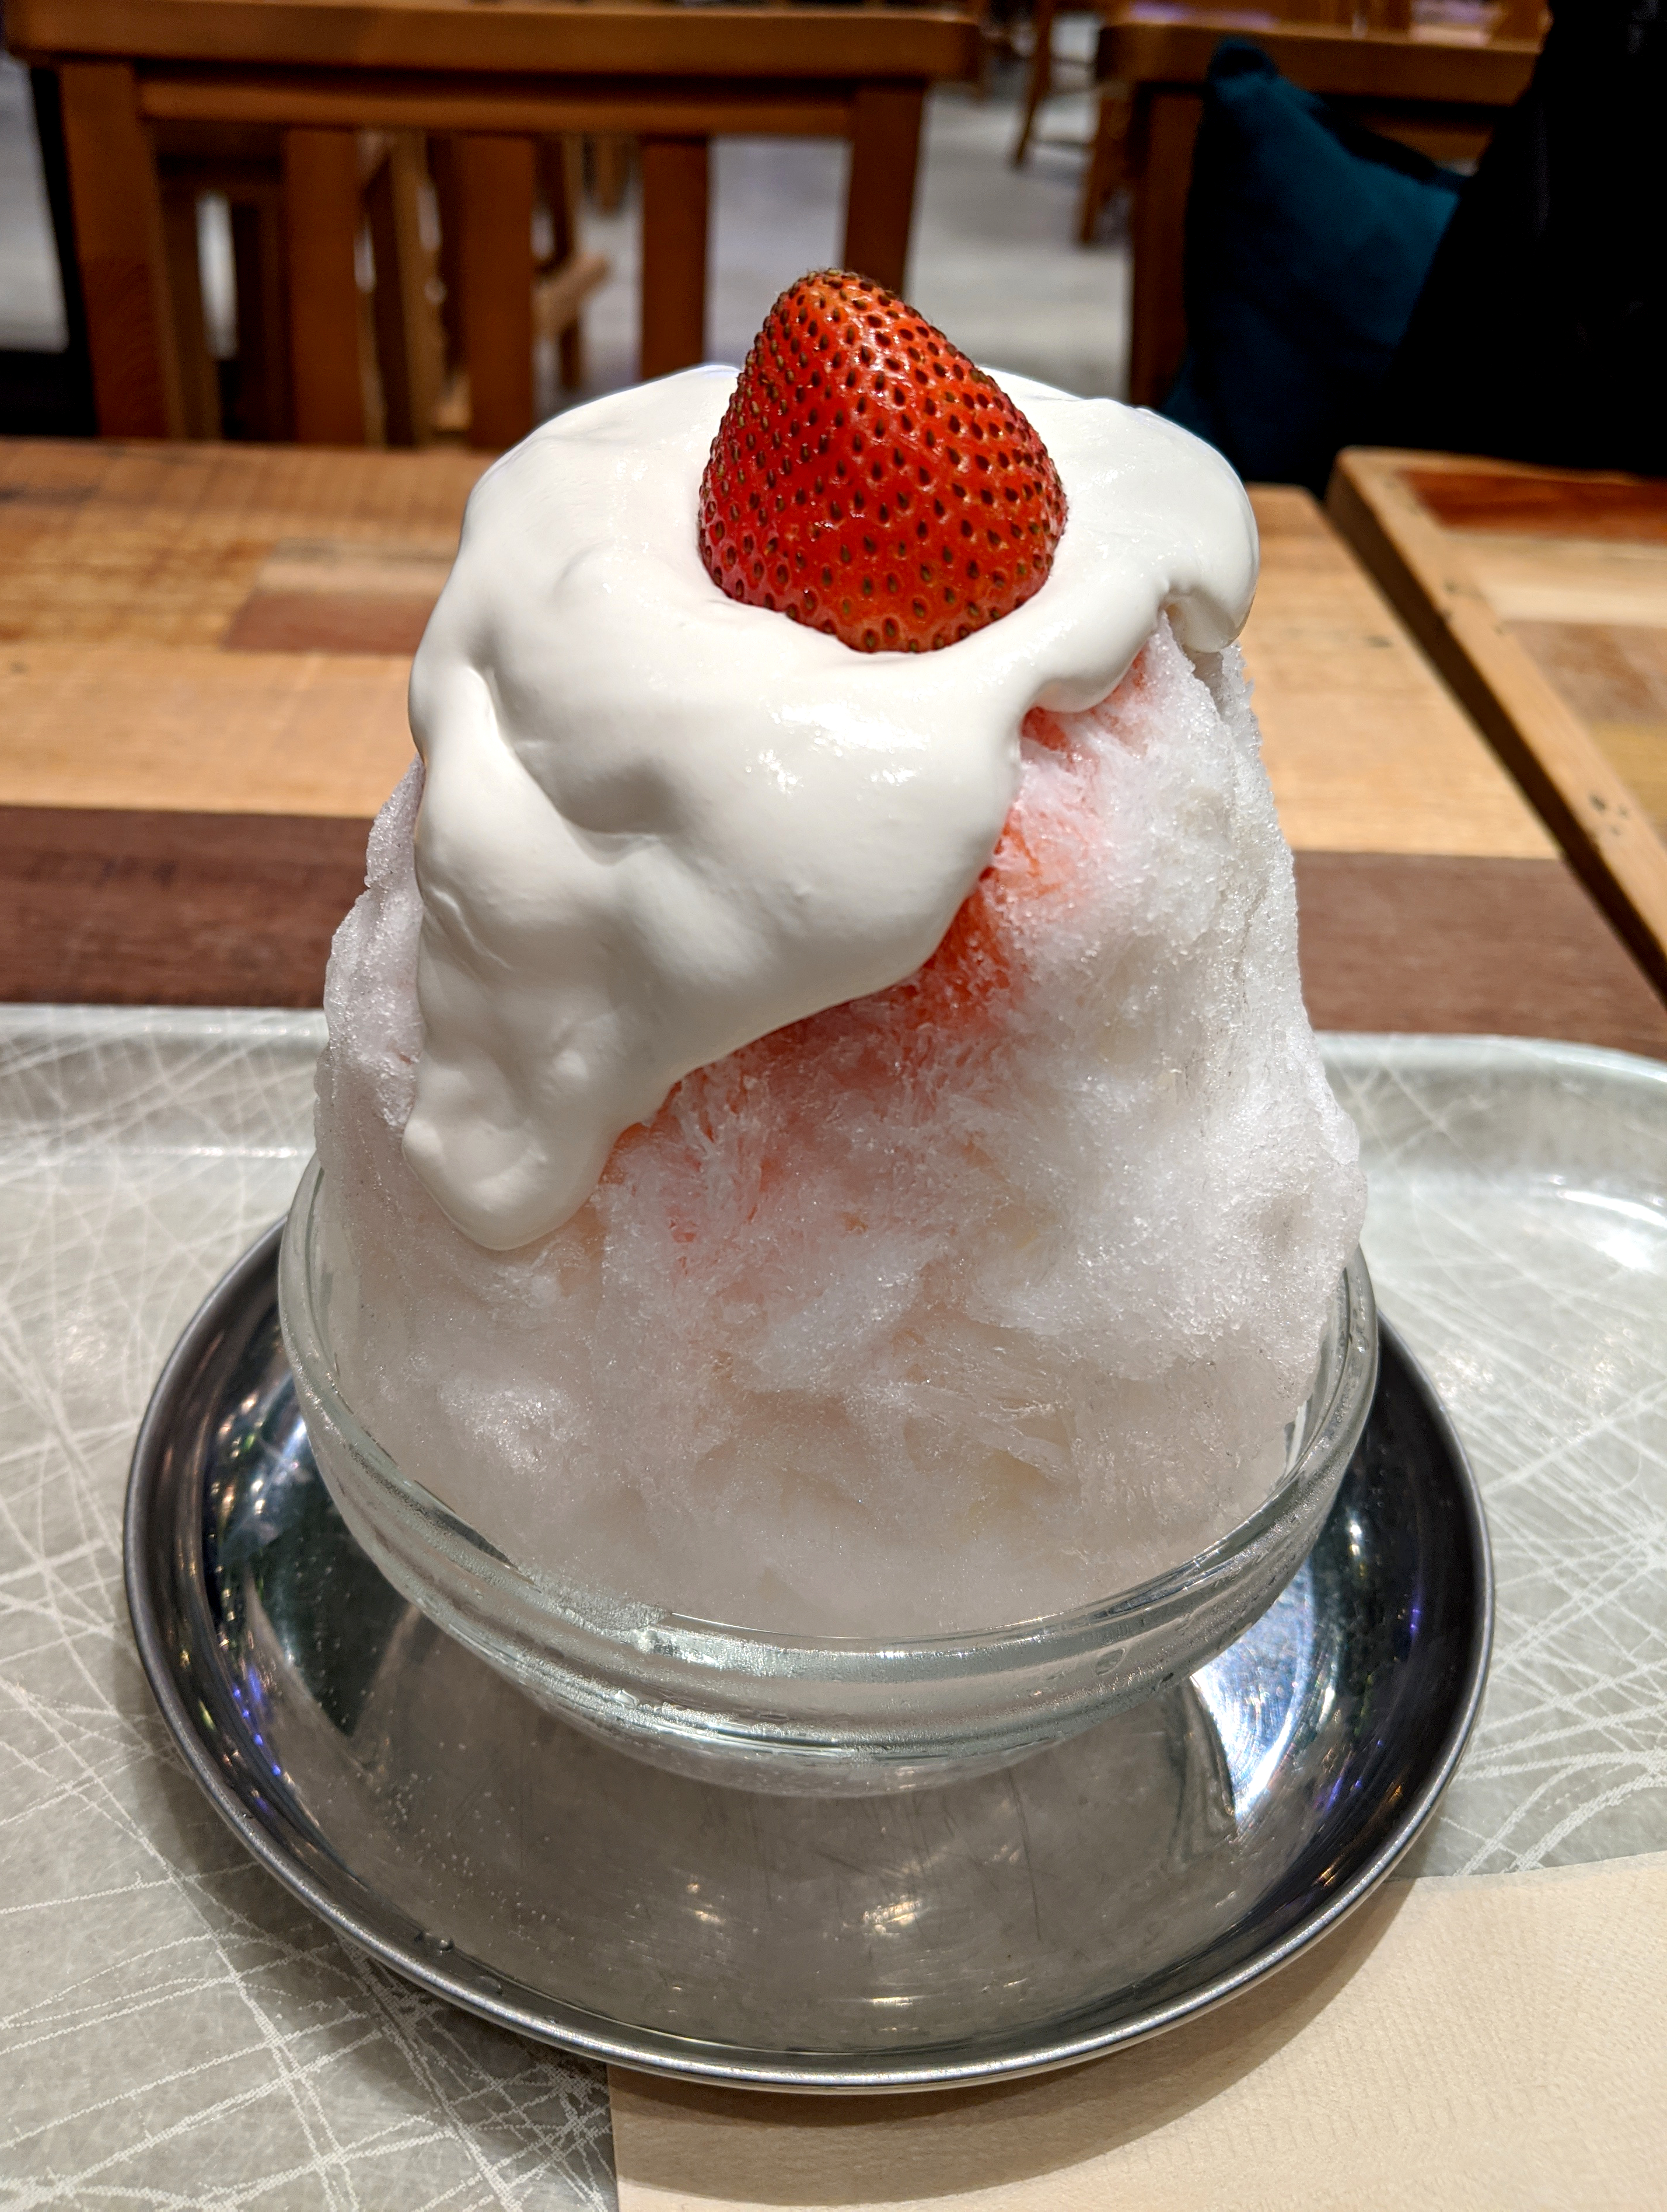 パティシエが作る ケーキのようなかき氷 を出すお店で ショートケーキのかき氷を食べてみた 東京 新宿 フローチェ ロケットニュース24